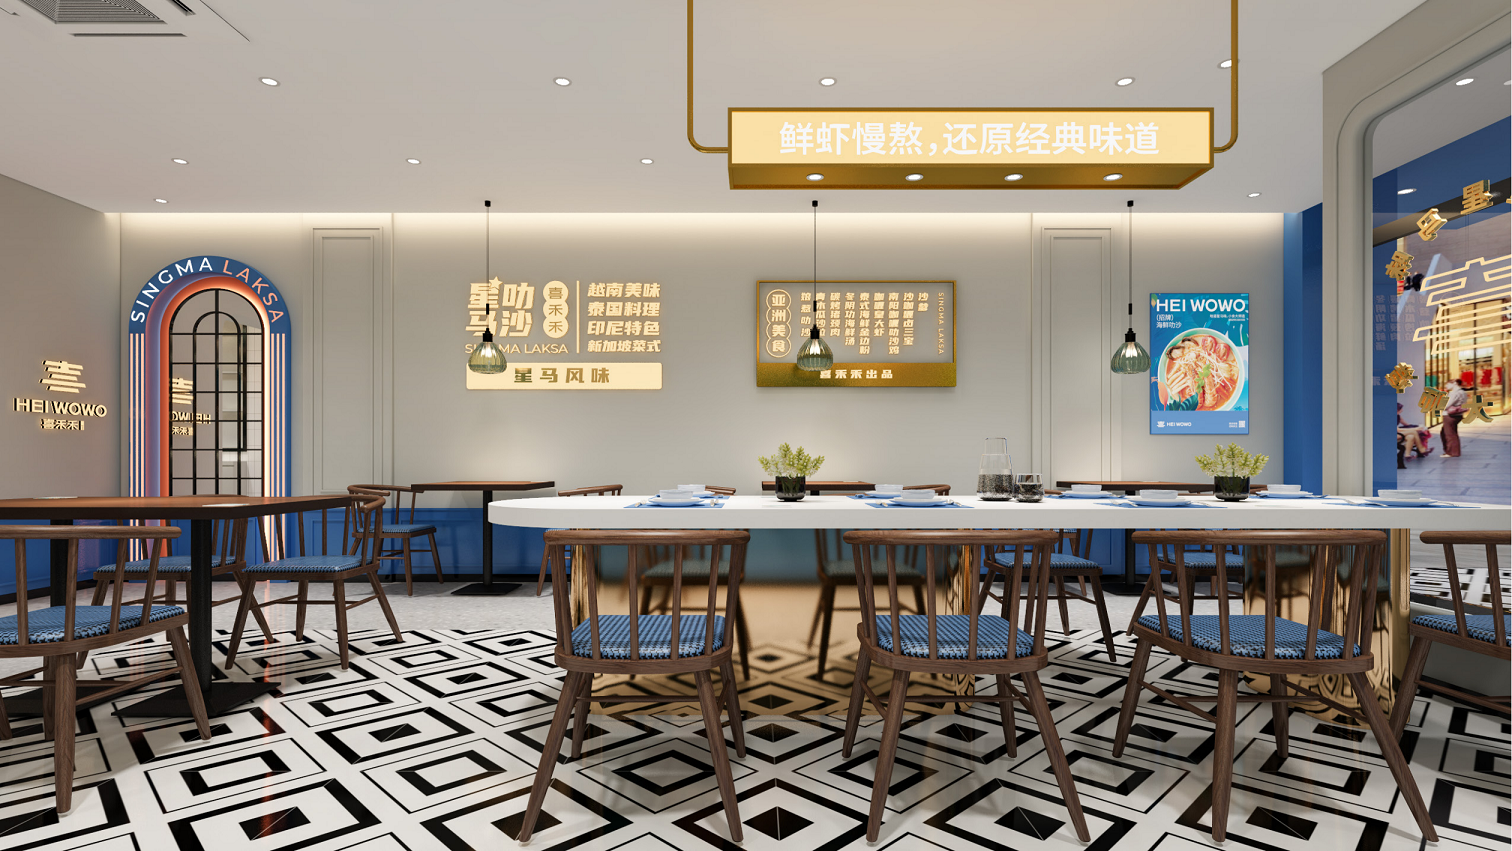 【喜禾禾】空间设计餐饮料理公装设计SI品牌店效果图简餐